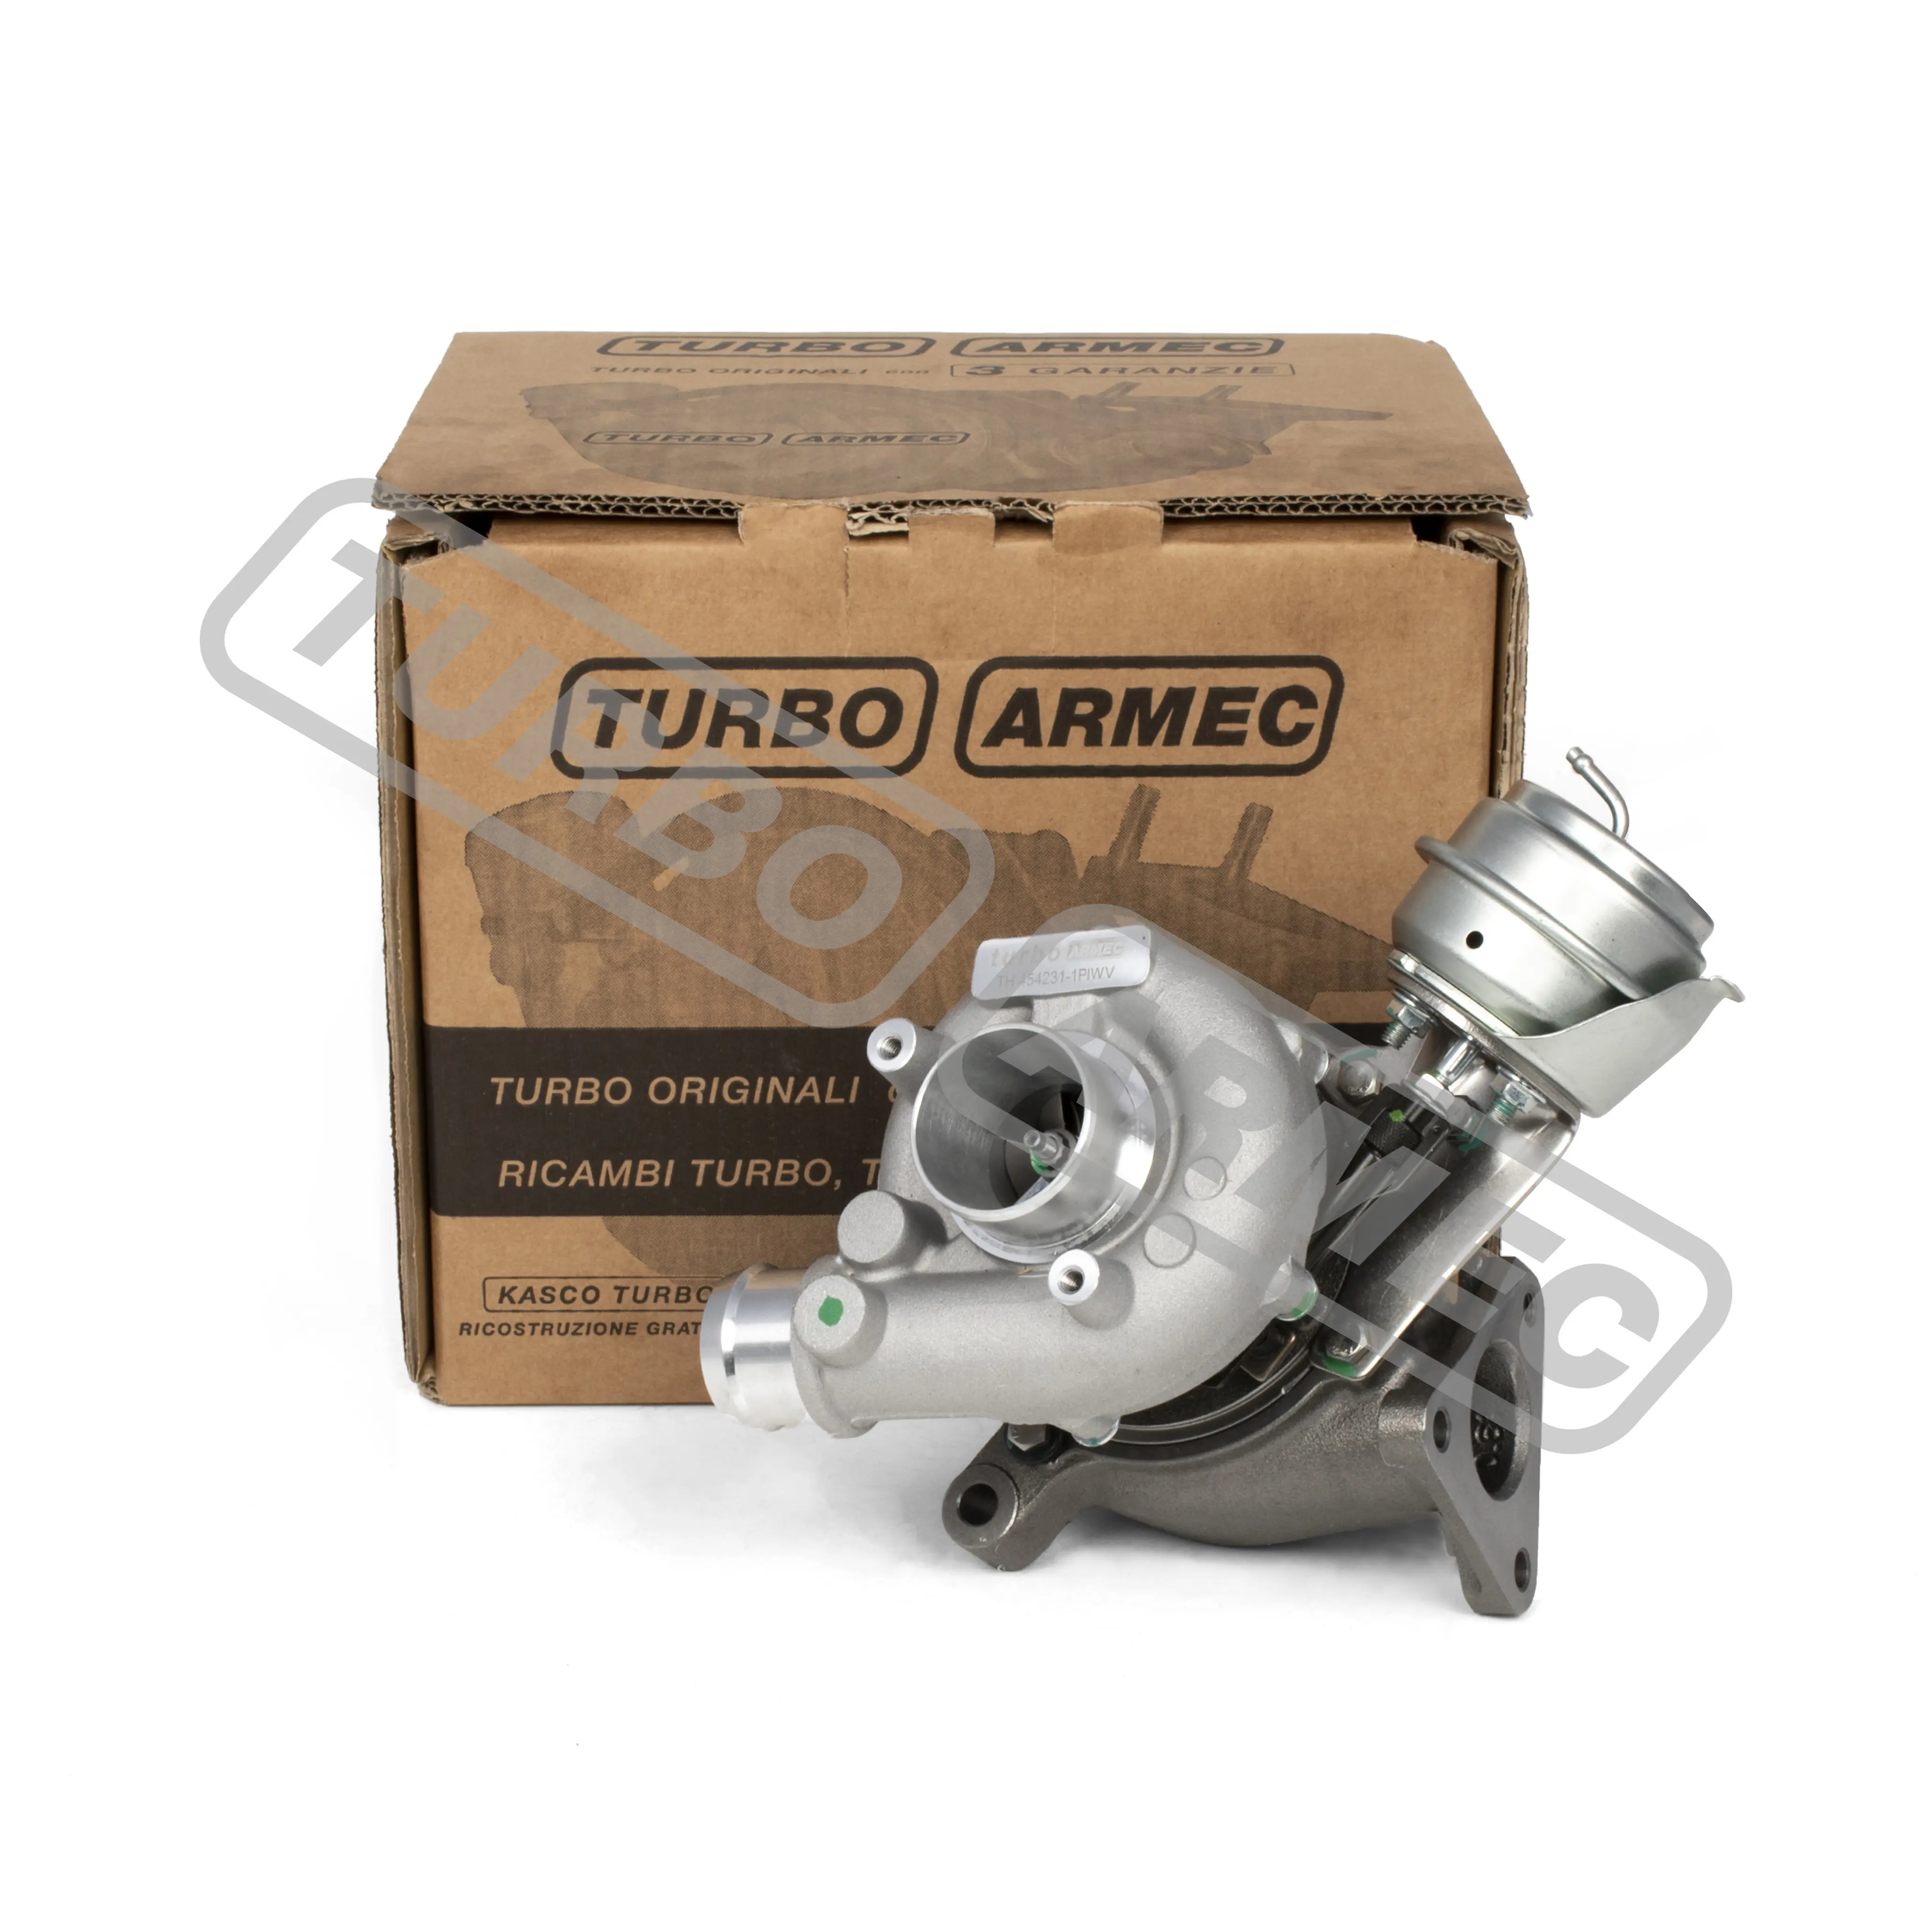 Turbo Armec th 454231-1 nuovo kit completo di guarnizioni turbo compatibile con AUDI A4 VOLKSWAGEN 1.9 TDI con garanzia kasco